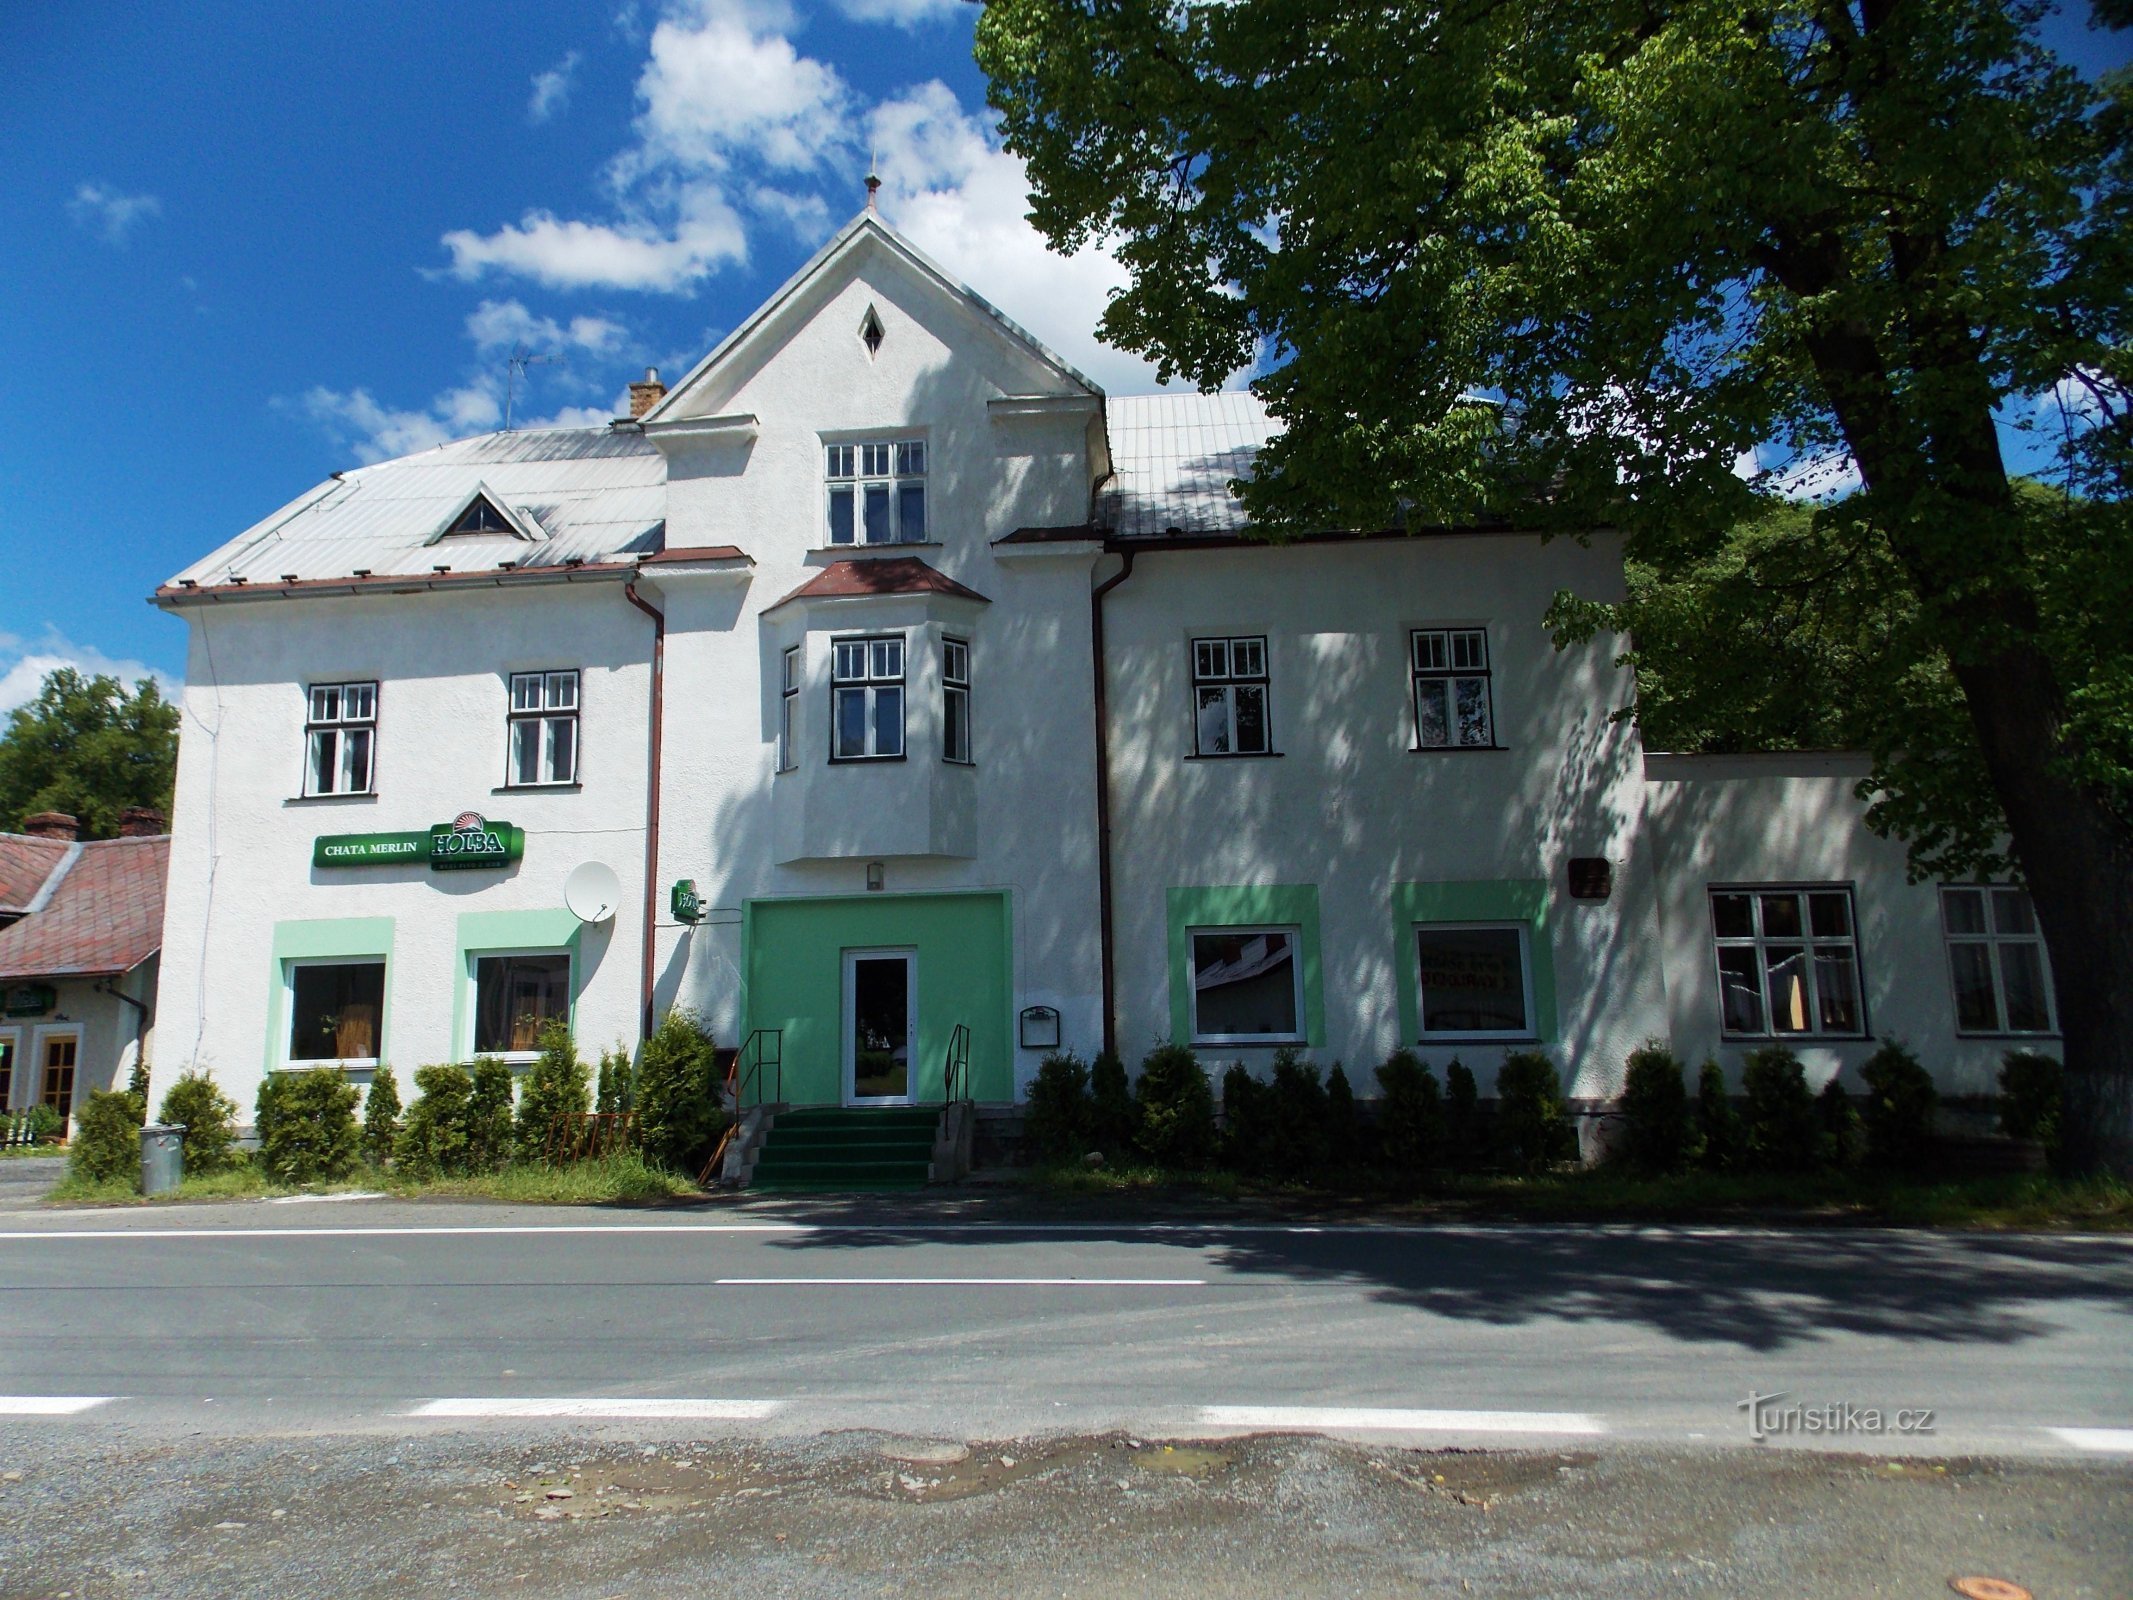 Chỗ ở tại Karlovice gần Rýmařov trong ngôi nhà nhỏ kiểu nông thôn Merlin